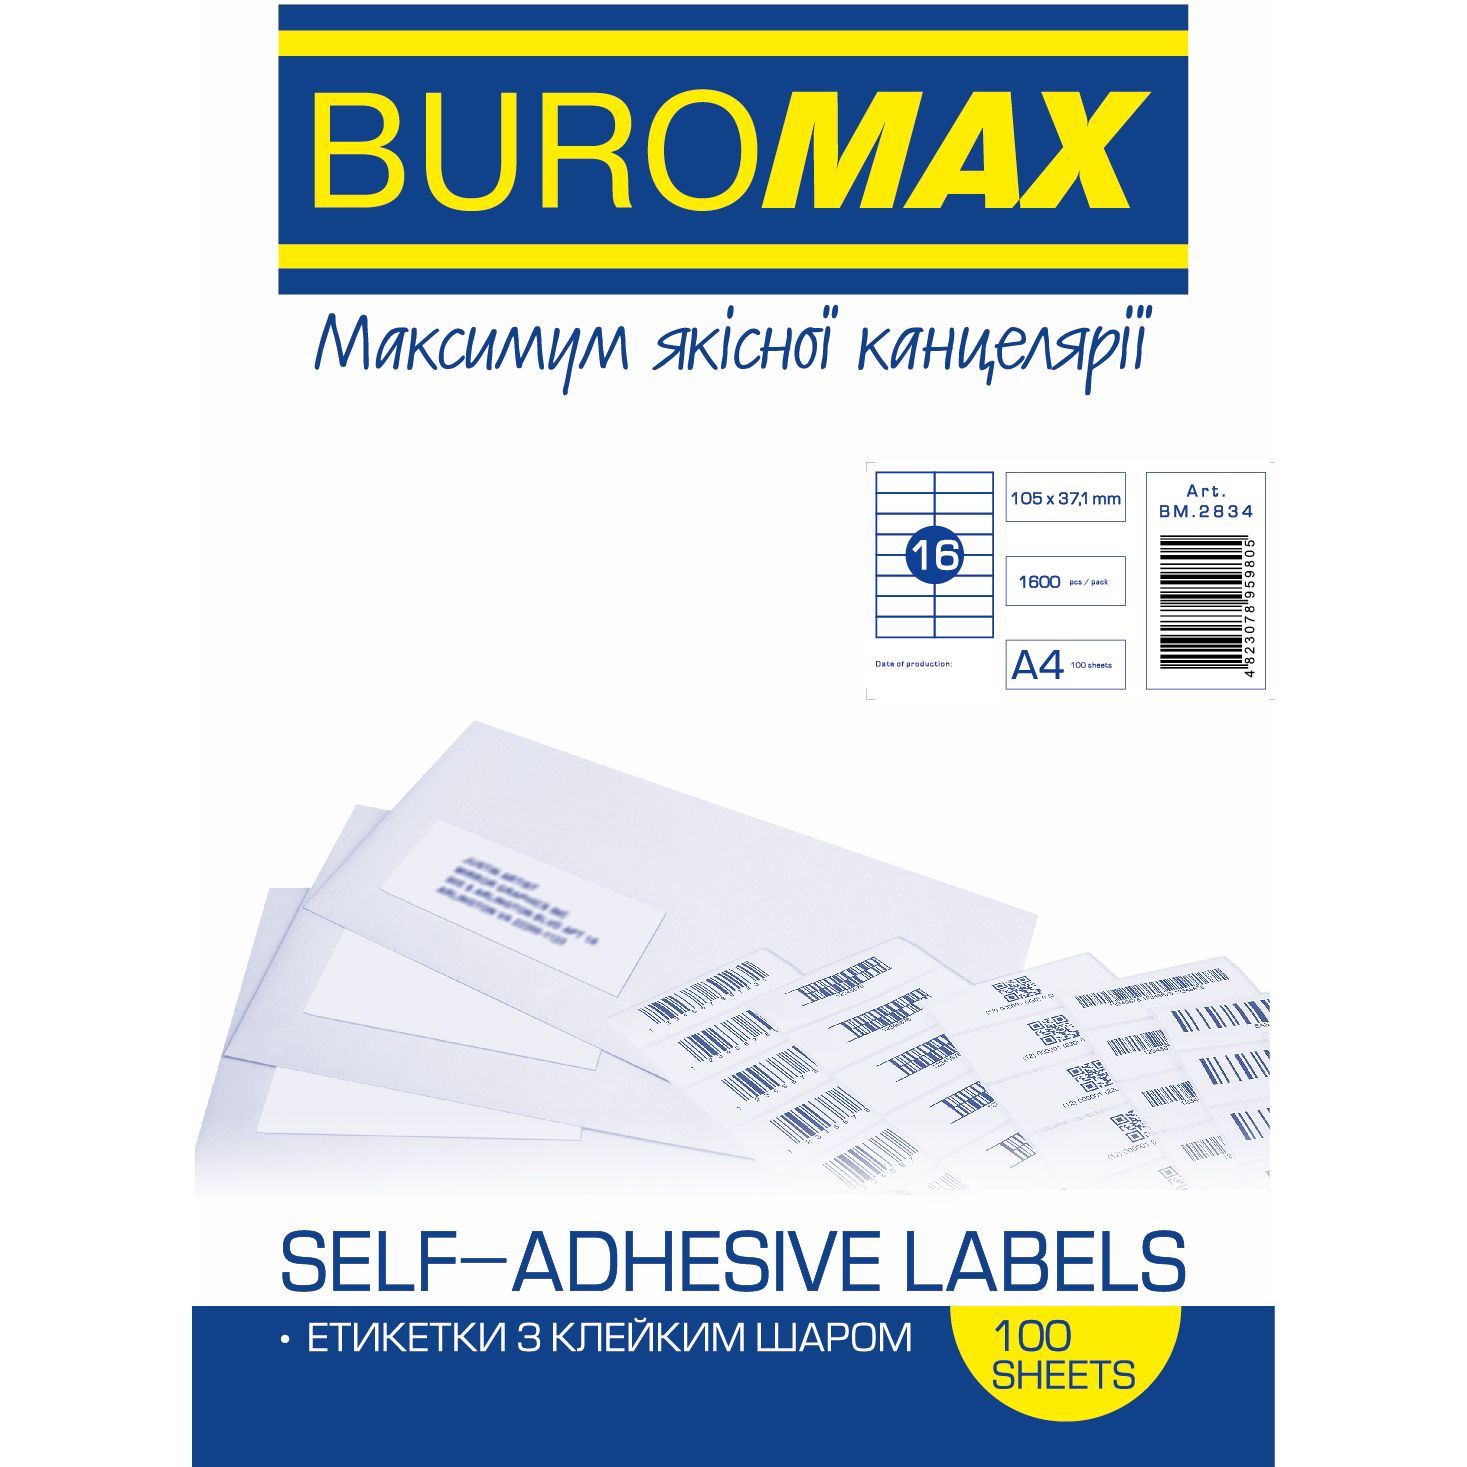 Етикетки самоклейні Buromax 105х37.1 мм 100 шт. (BM.2834) - фото 1